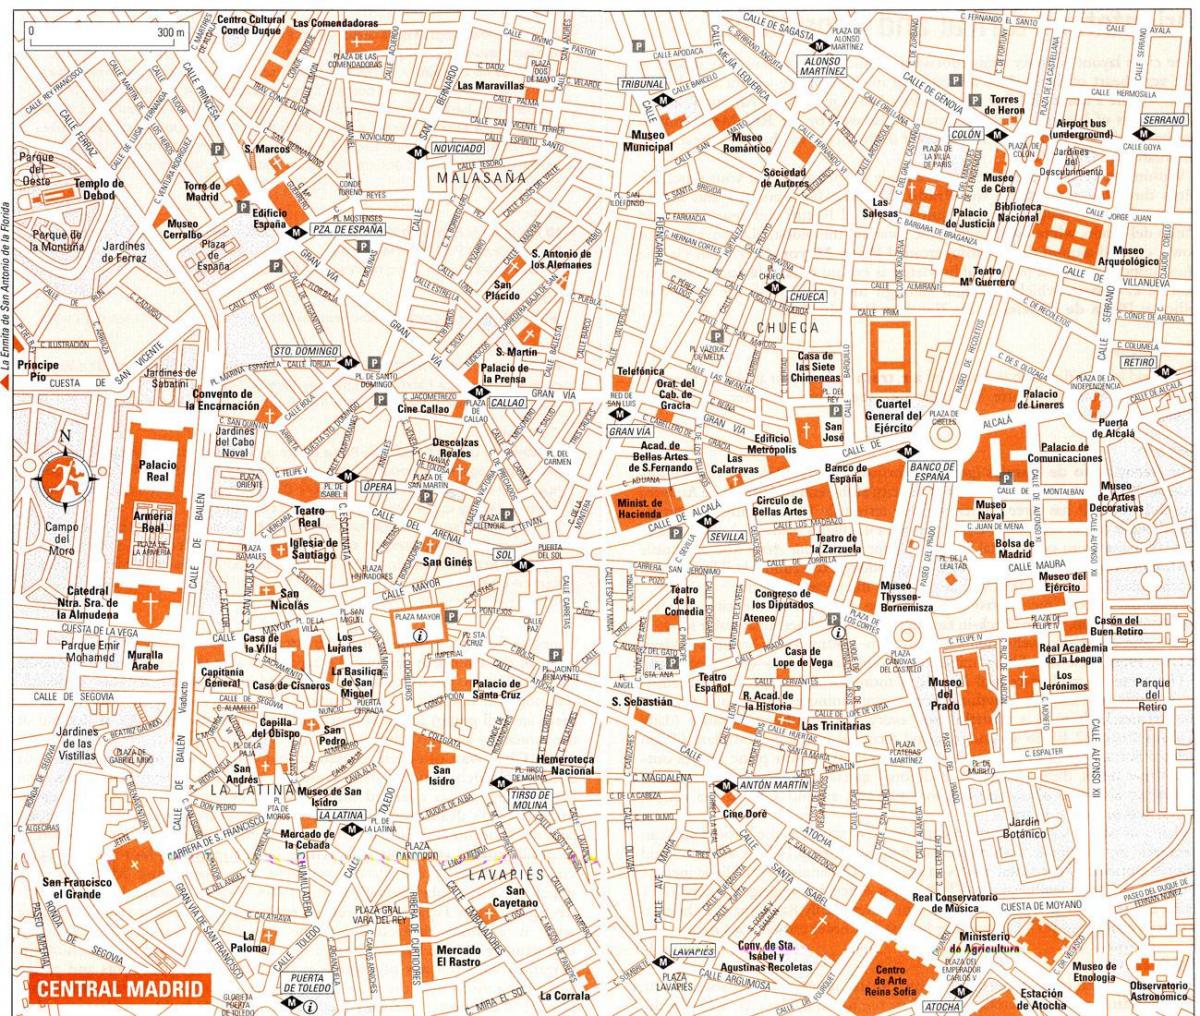 τουριστικός χάρτης της Μαδρίτης, κέντρο